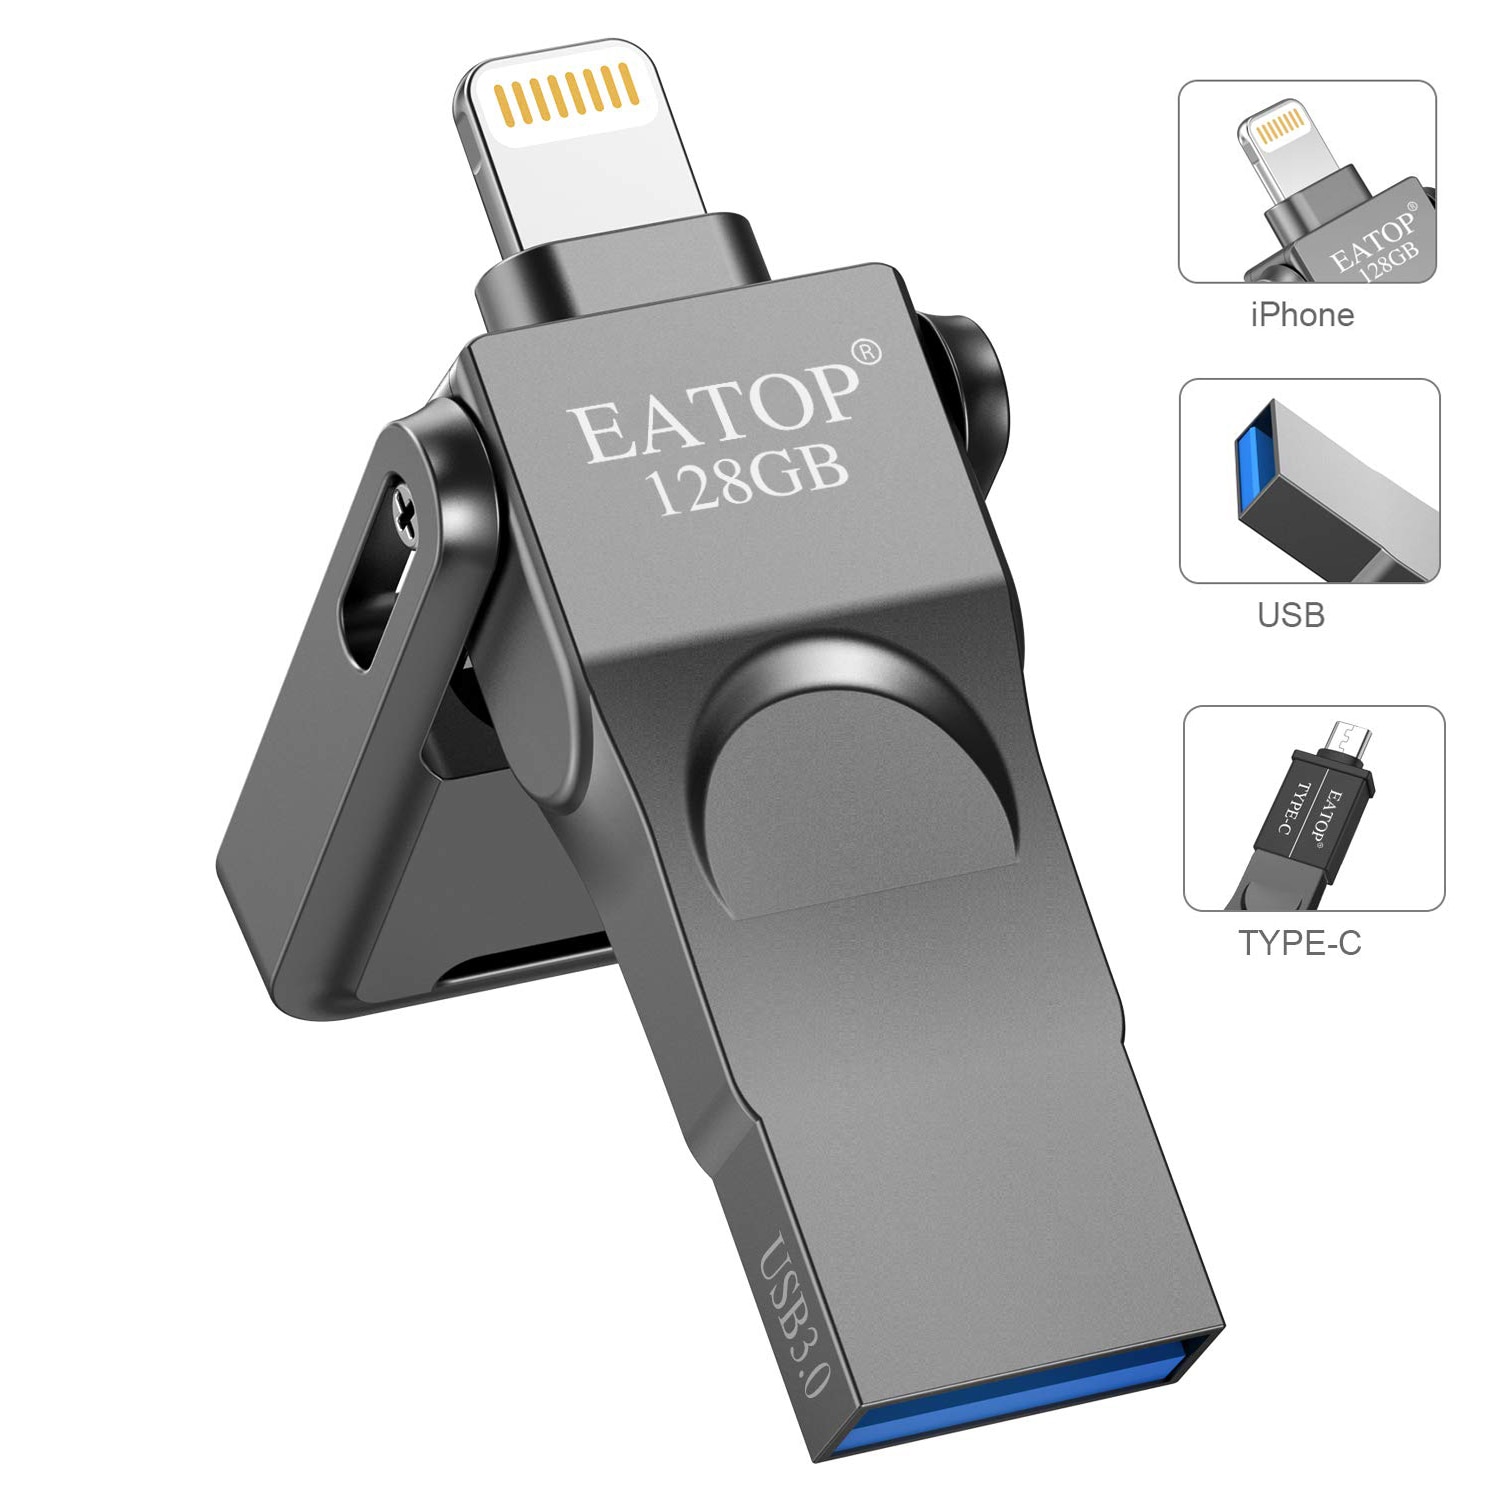 Iphone Memory Stick 128 Gb, Iphone USB3.0 Flash Drive Met 3 Poorten, compatibel Voor Iphone/Ipad/Macbook/Android En Computer (Grijs)